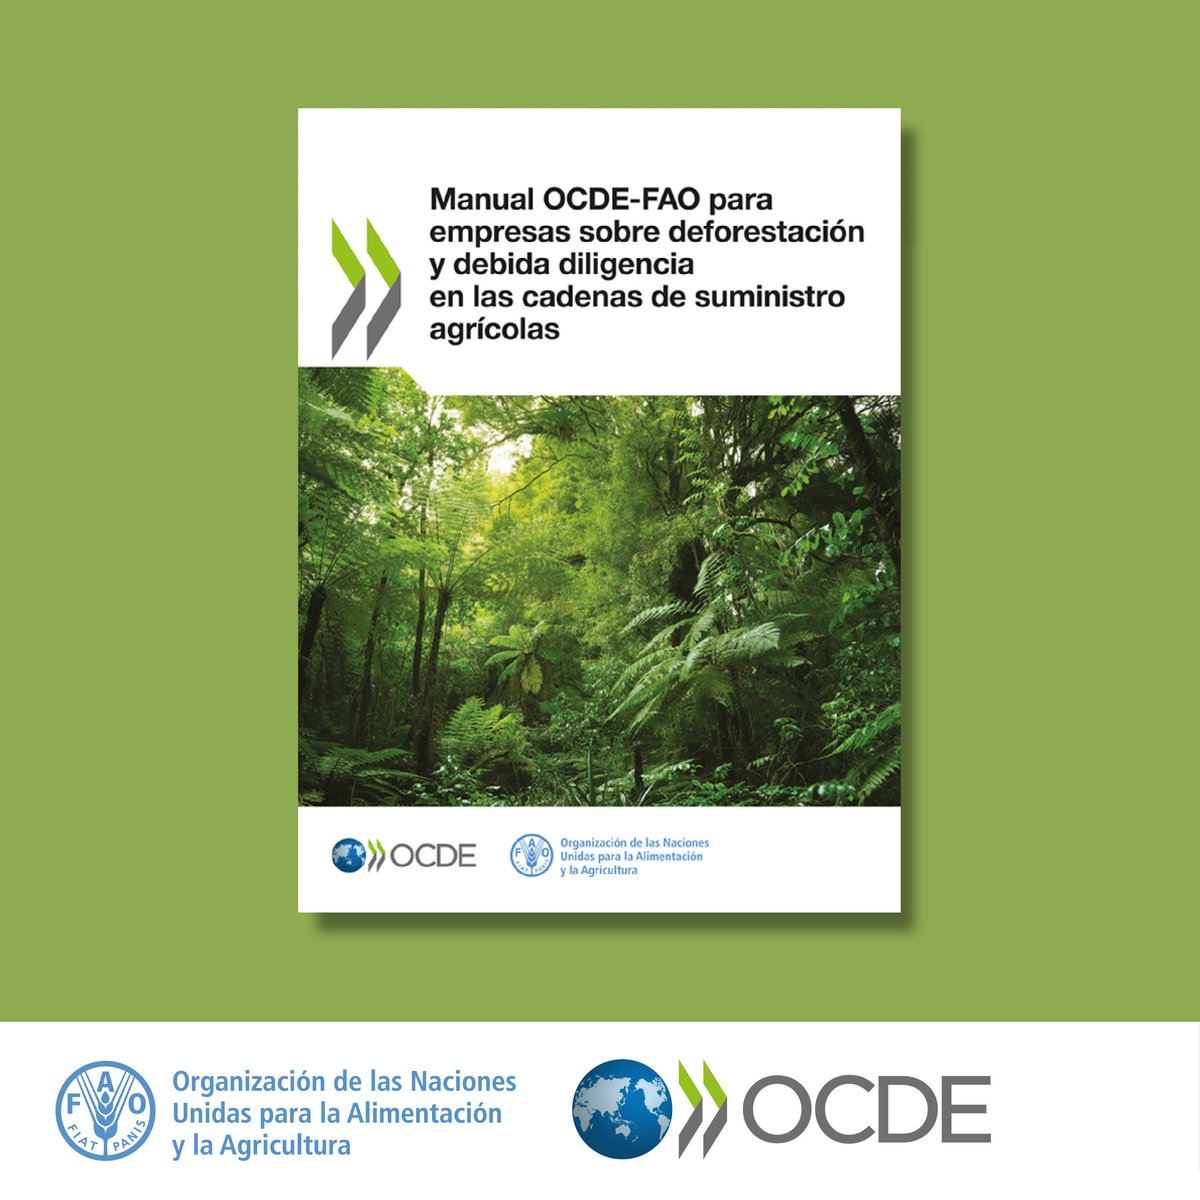 La @ocdeenespanol y la @FAOenEspanol han publicado un manual para empresas sobre deforestación y debida diligencia en cadenas de suministro agrícola. El manual ayuda las empresas a cumplir sus responsabilidades de reducción de la deforestación. Léelo👉bit.ly/3vSO4cn